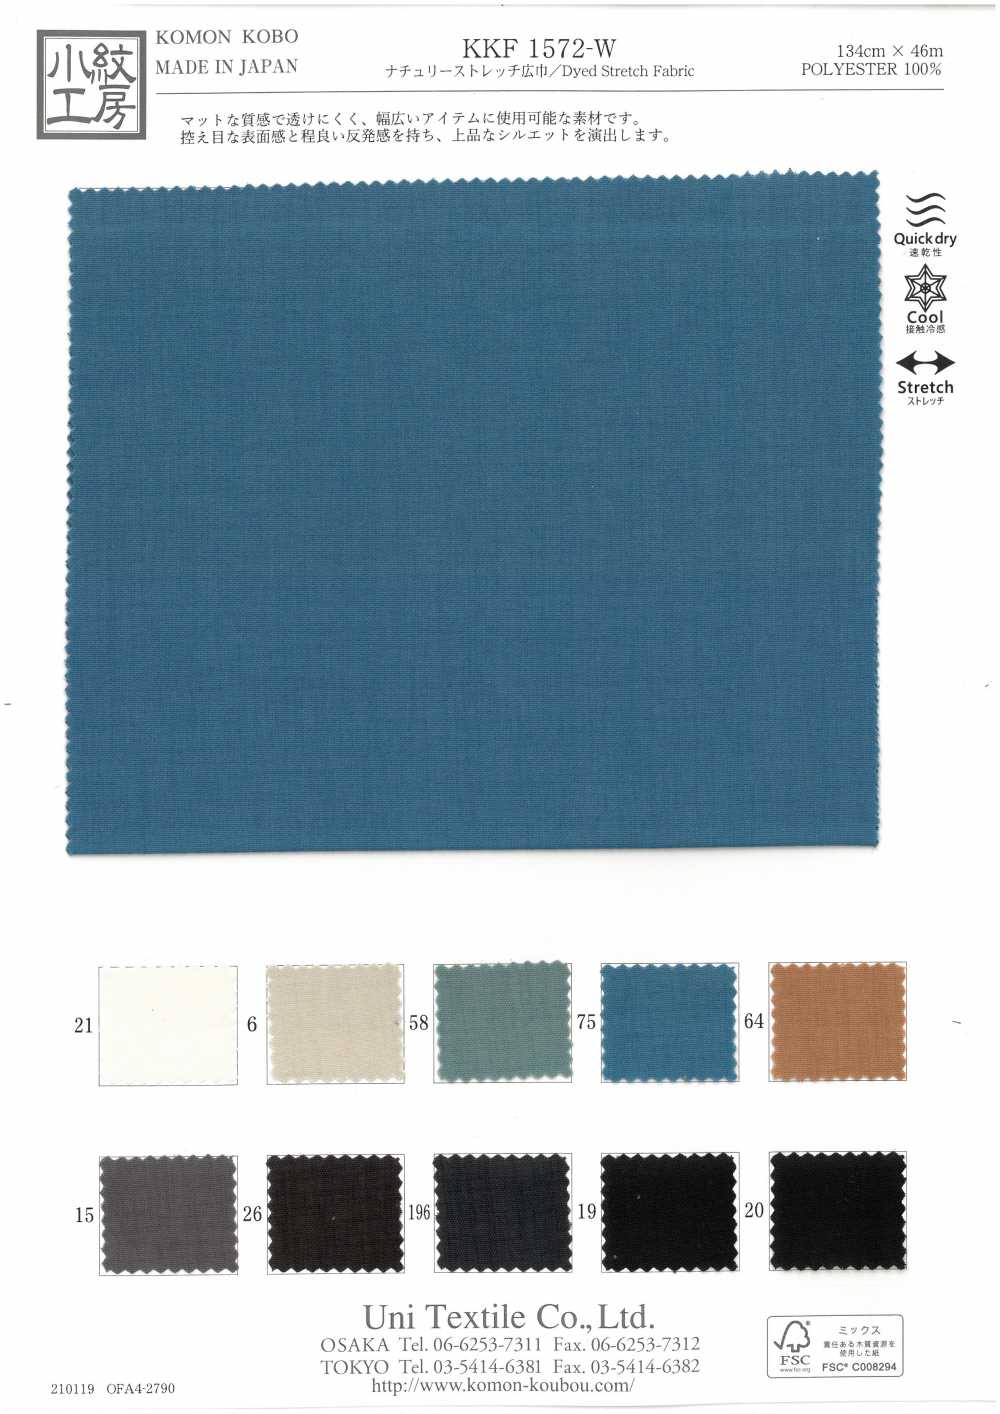 KKF1572-W Co Giãn Khổ Rộng Tự Nhiên Kéo Dài[Vải] Uni Textile